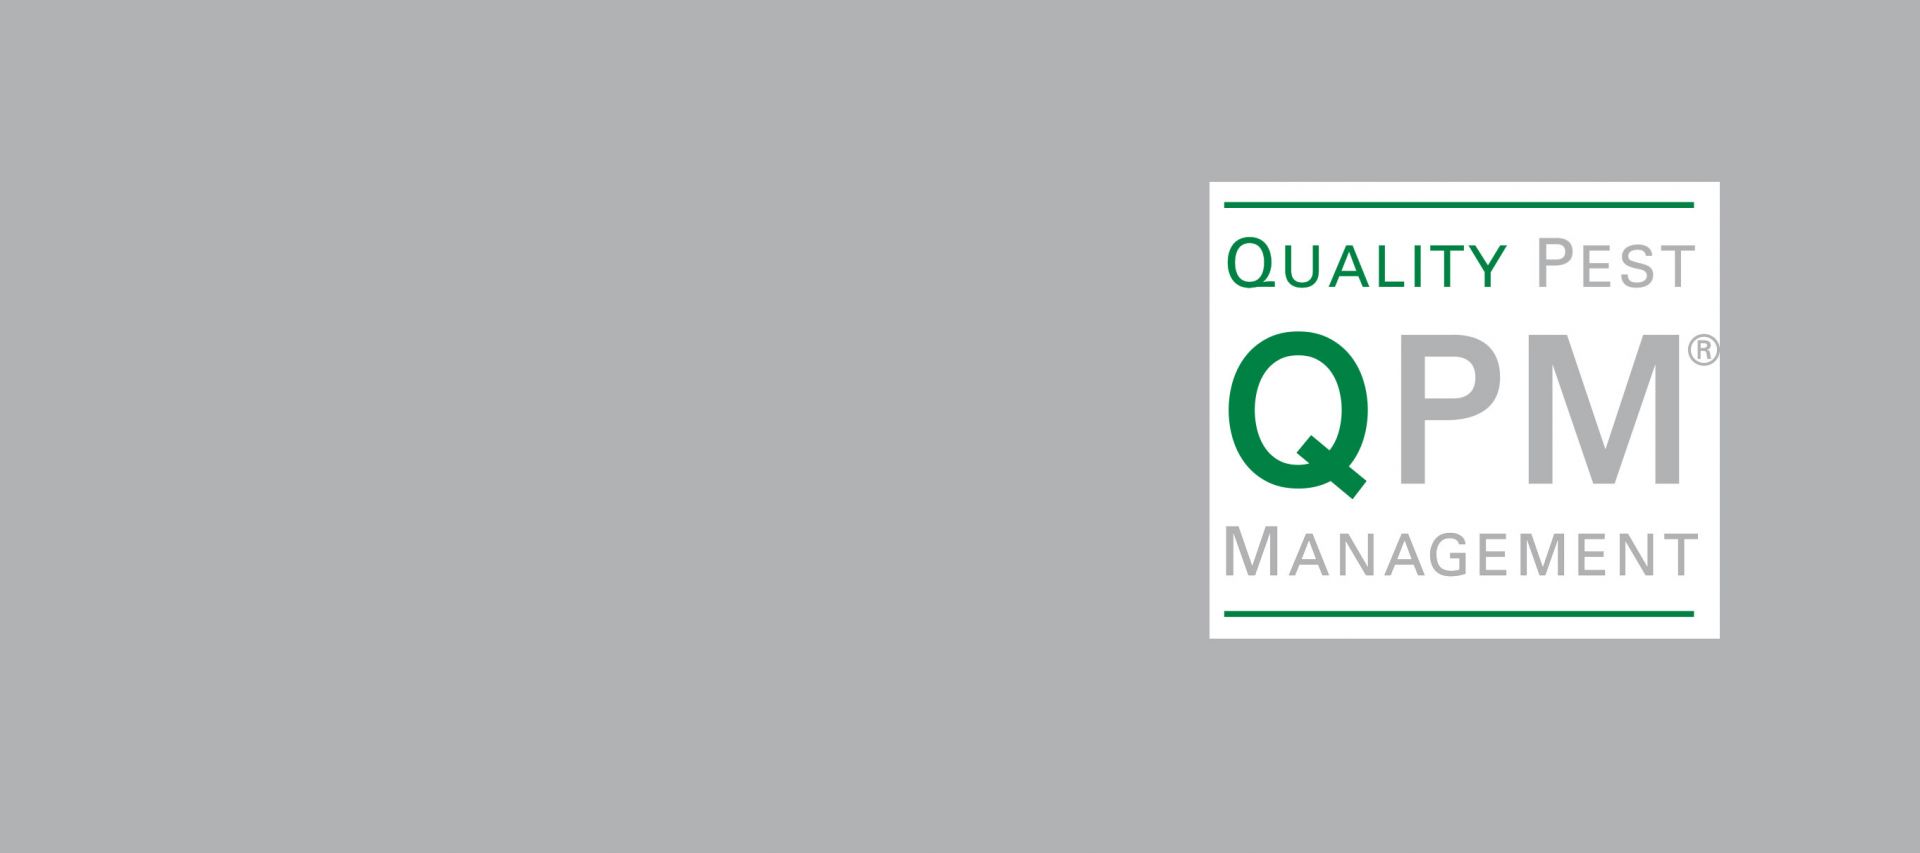 Quality Pest Management - eine Marke der Gemex Hygiene + Vorratsschutz